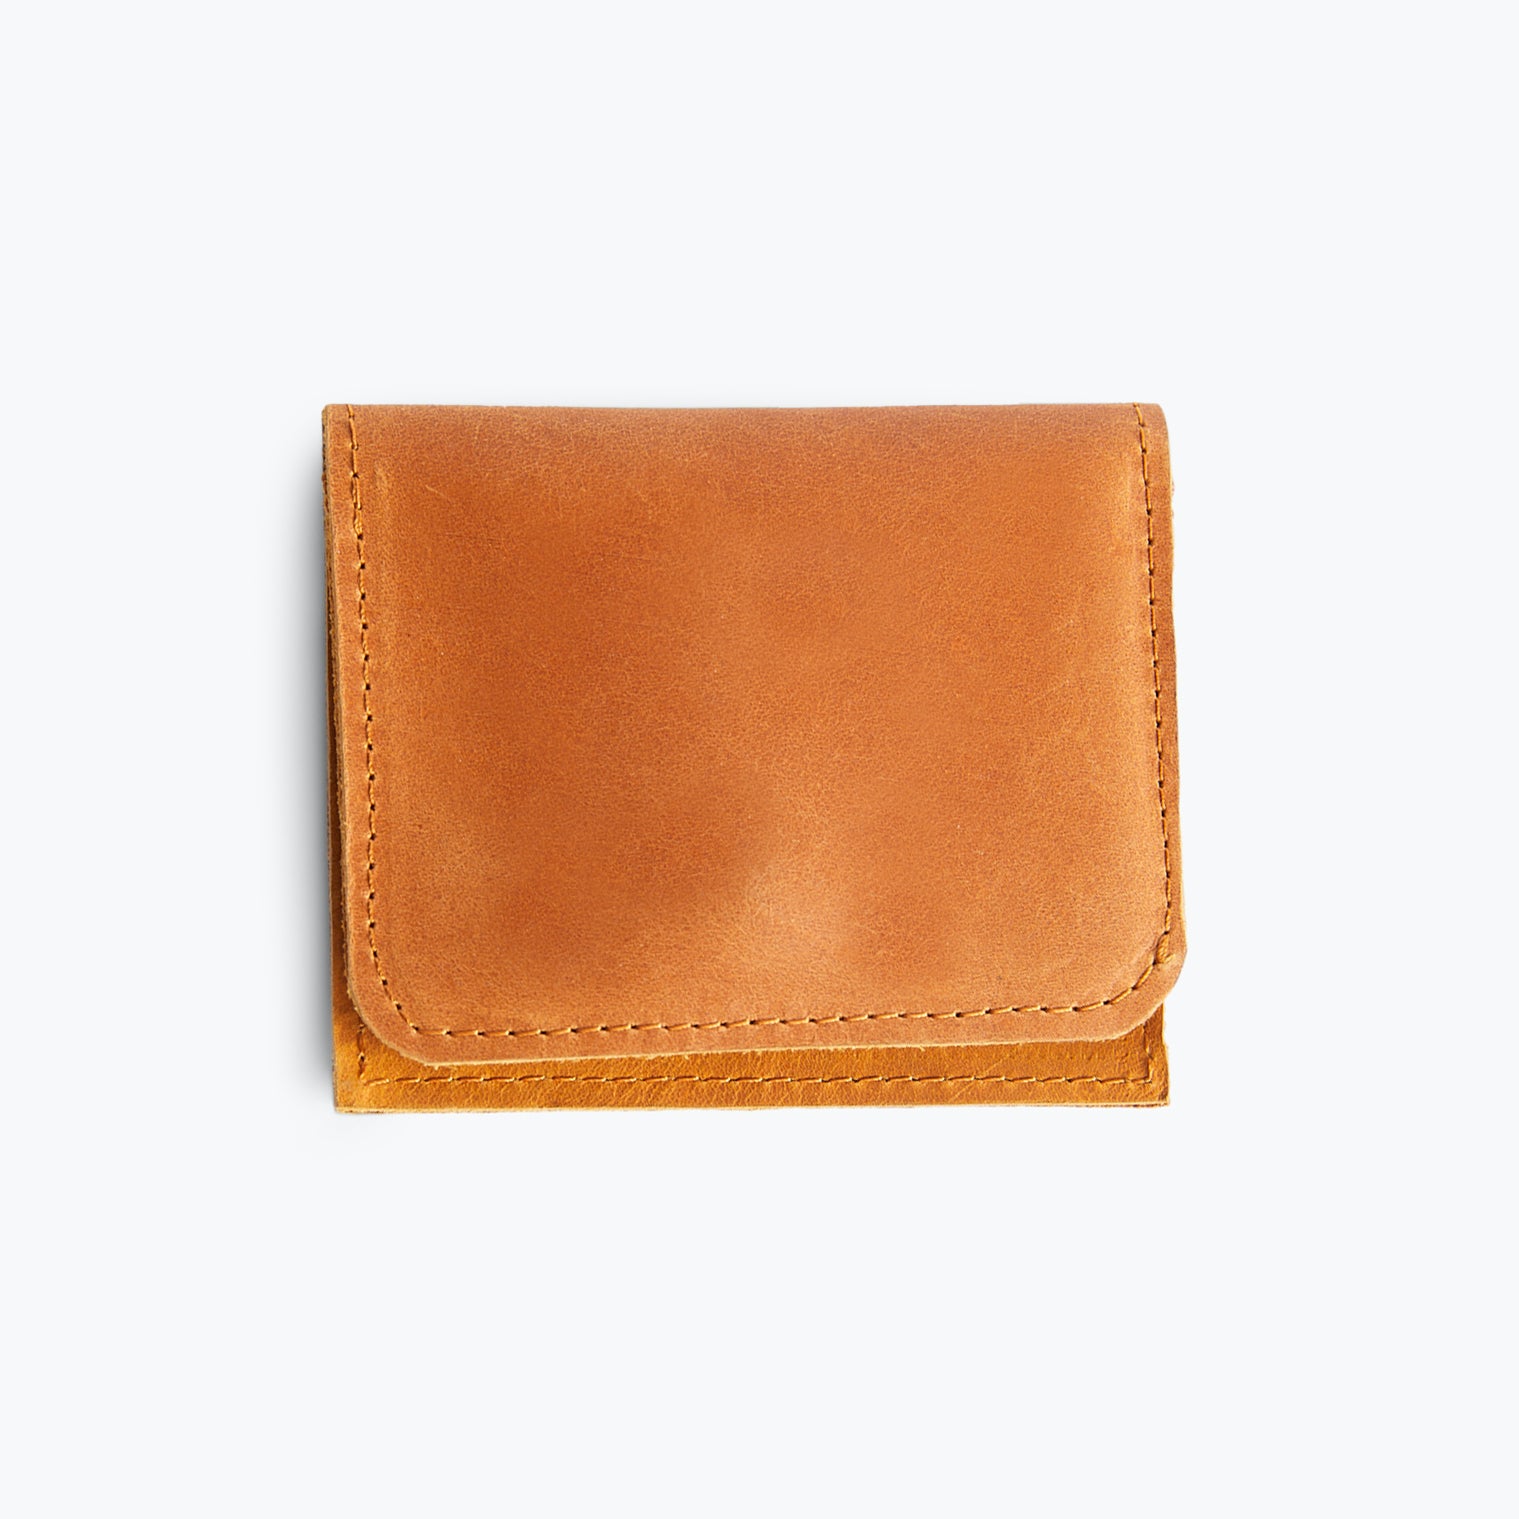 ABLE Debre Mini Wallet cognac leather